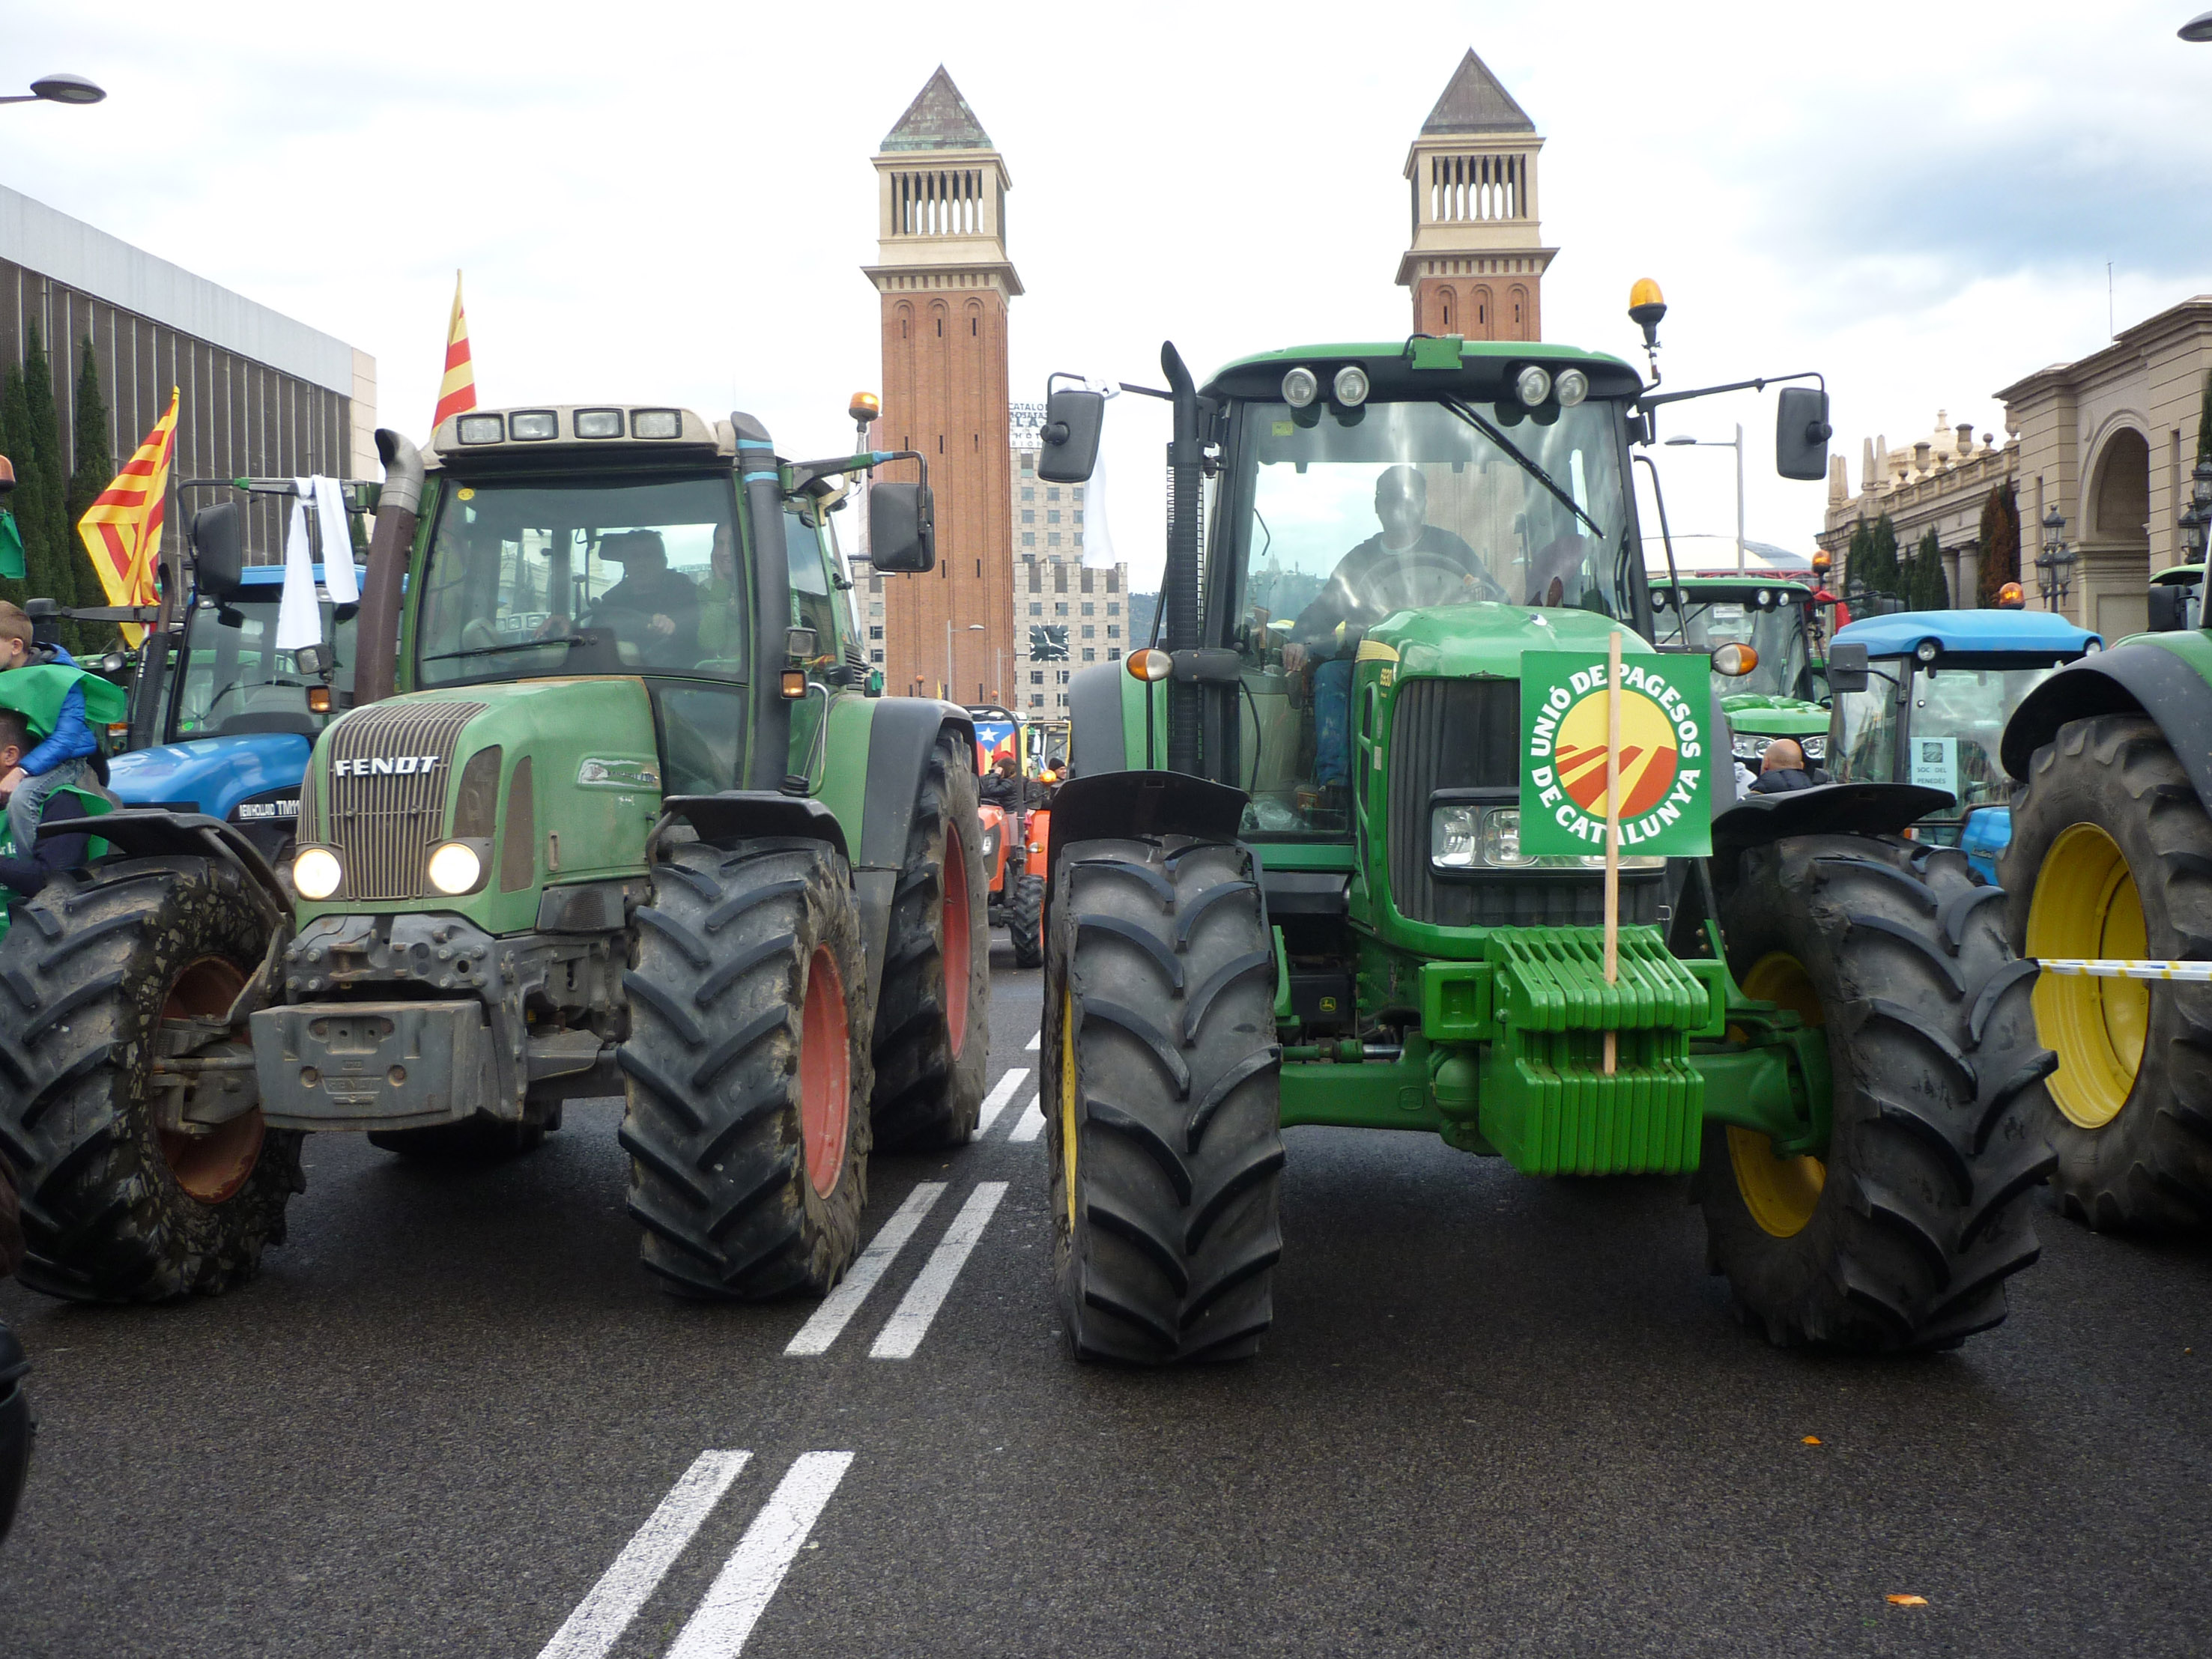 Més de 500 tractors ocupaven Barcelona amb la marxa pagesa